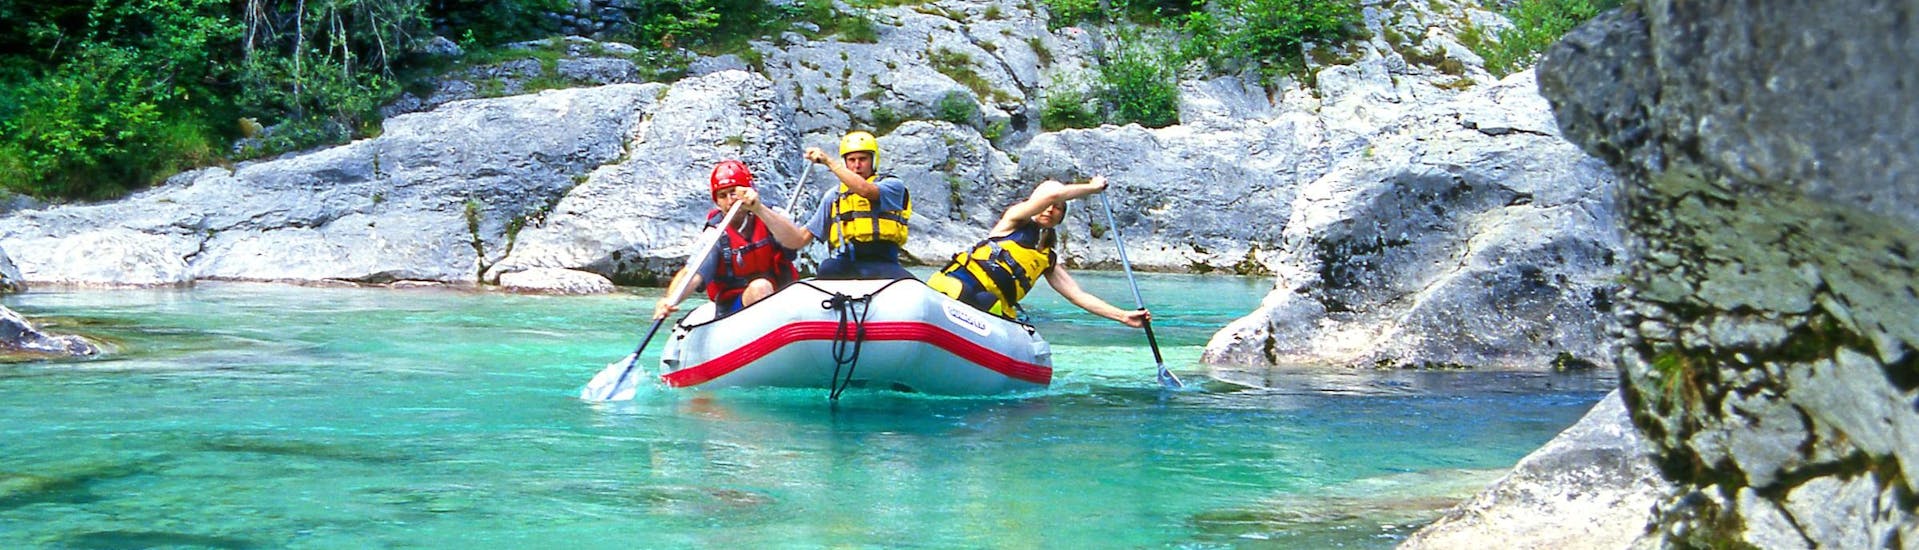 Emozioni forti vissute da un gruppo di giovani nel punto di interesse Valle dell'Isonzo, ideale per fare rafting e canyoning.